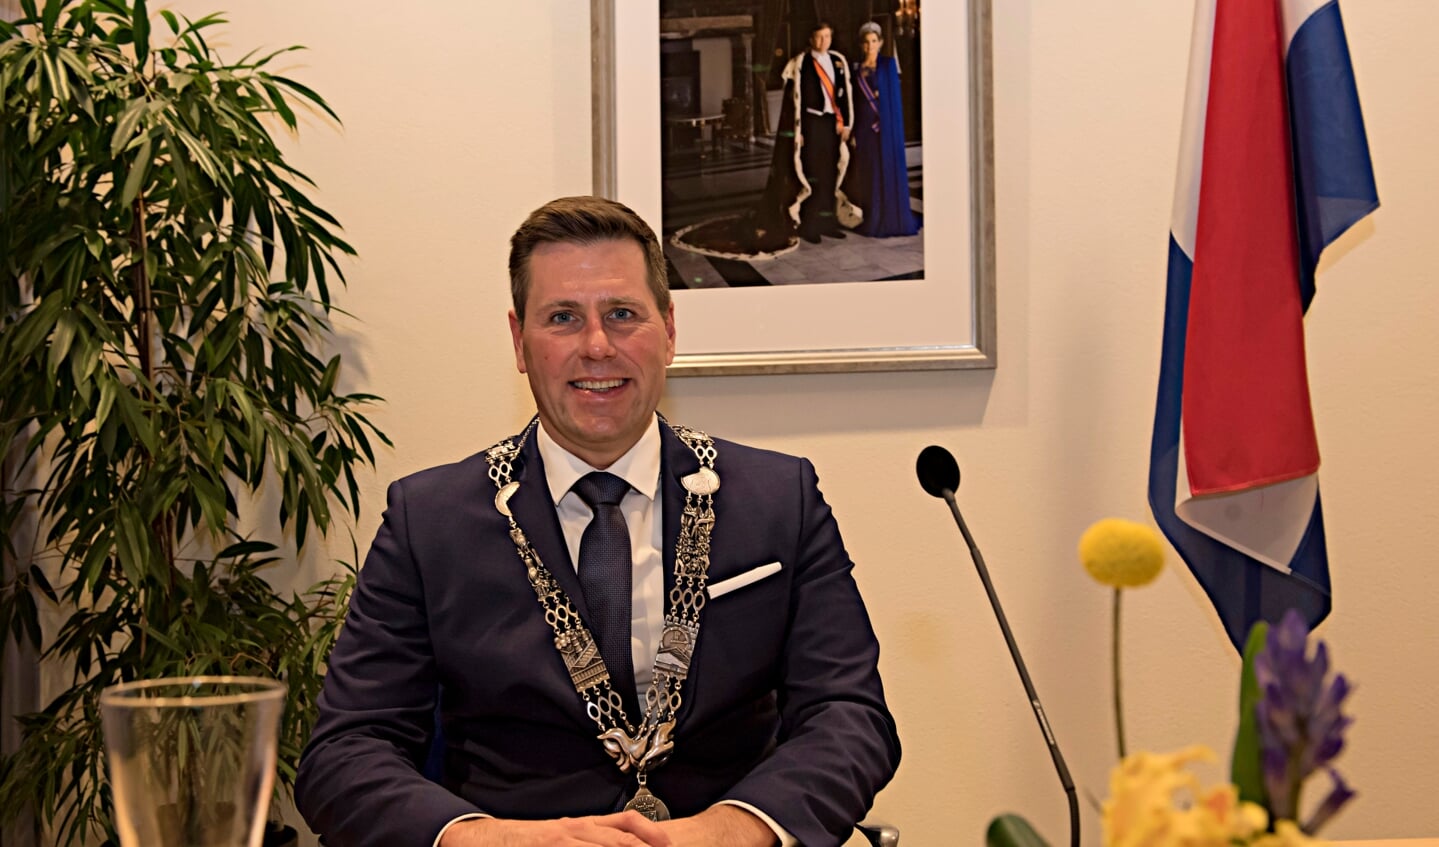 De nieuwe burgemeester van Pijnacker-Nootdorp Björn Lugthart hoopt ook zonder ambtsketting herkenbaar, bereikbaar en aanspreekbaar te zijn. Foto: Cok van den Berg